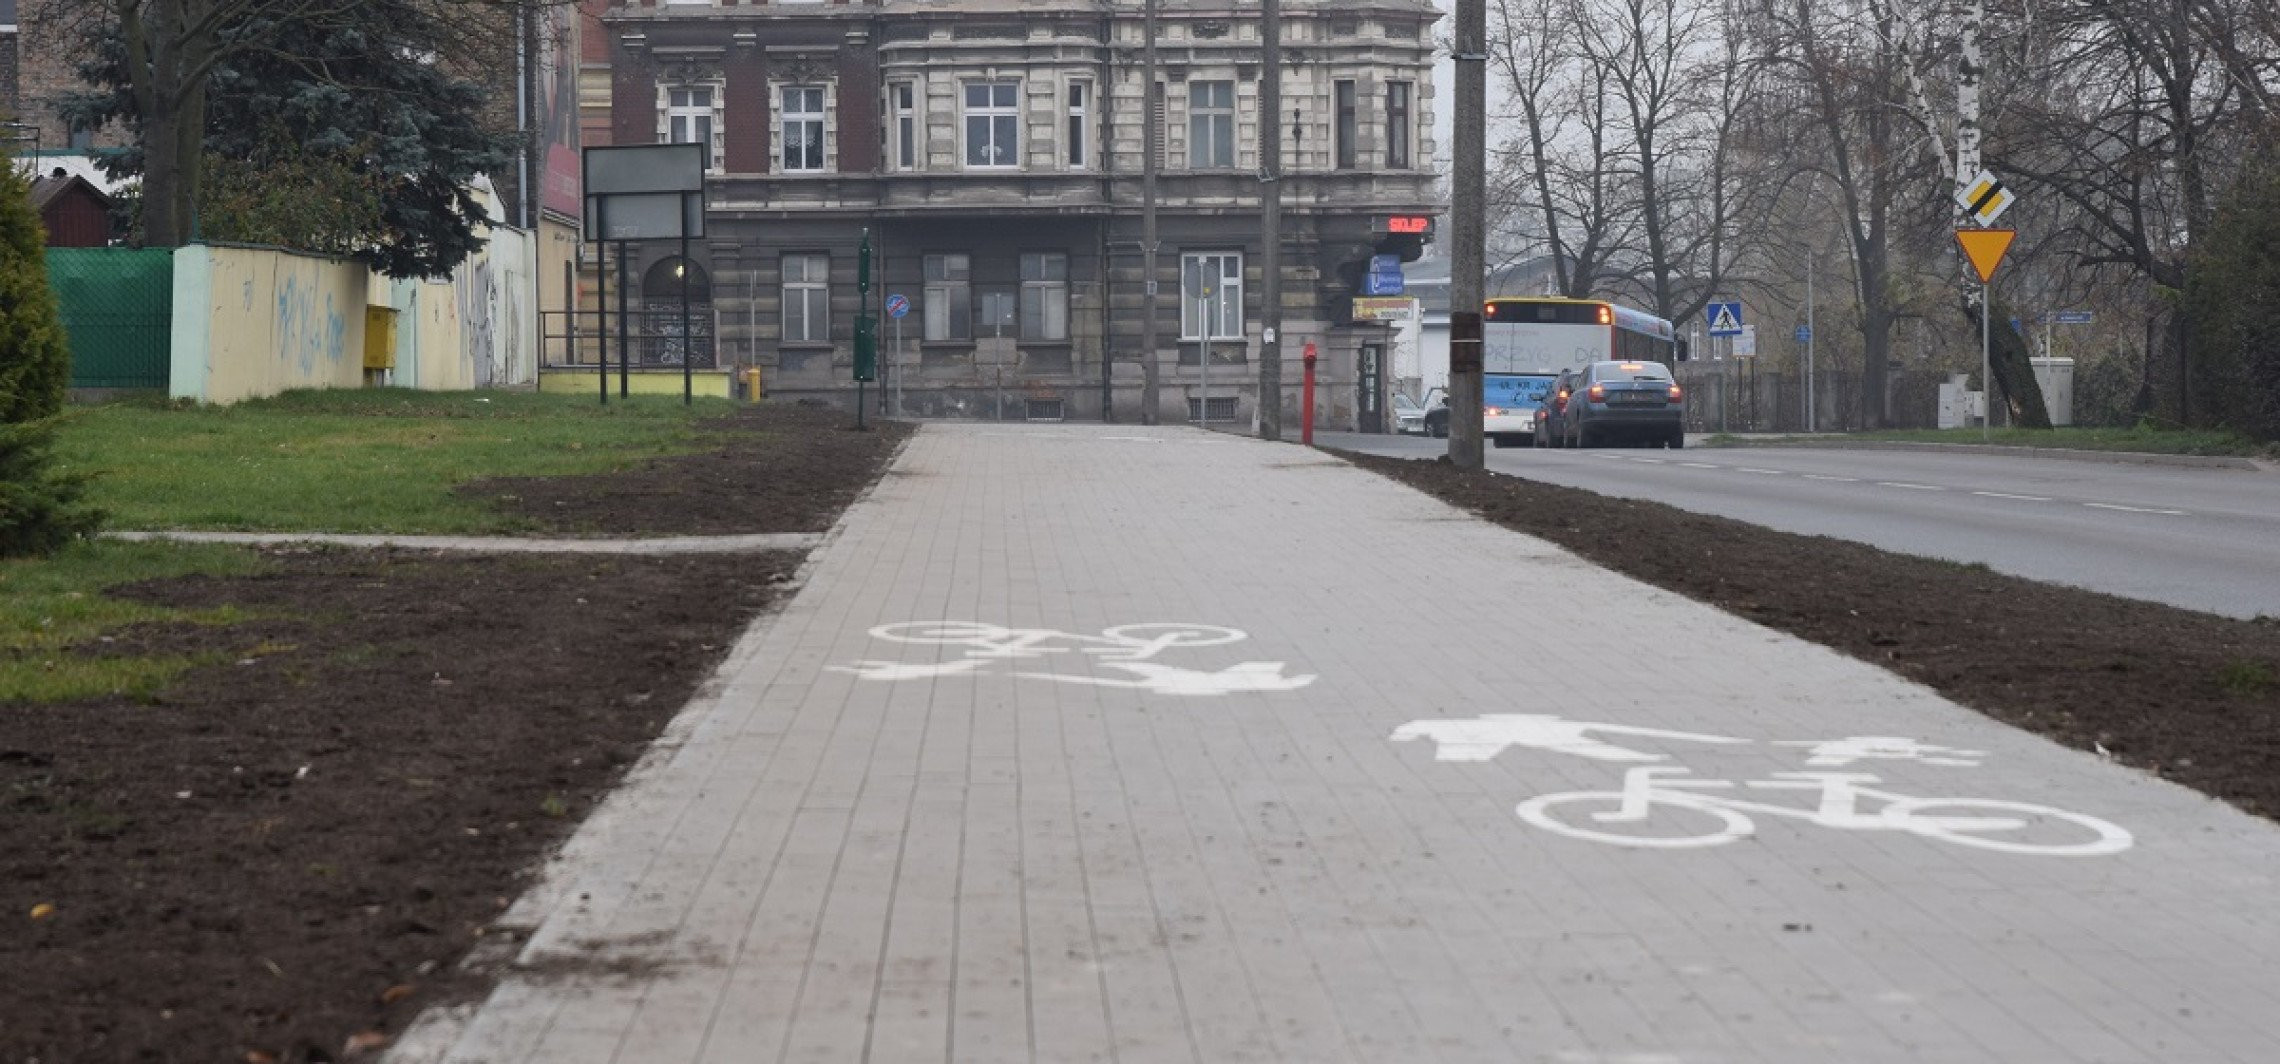 Inowrocław - Kolejne ścieżki rowerowe oddane do użytku